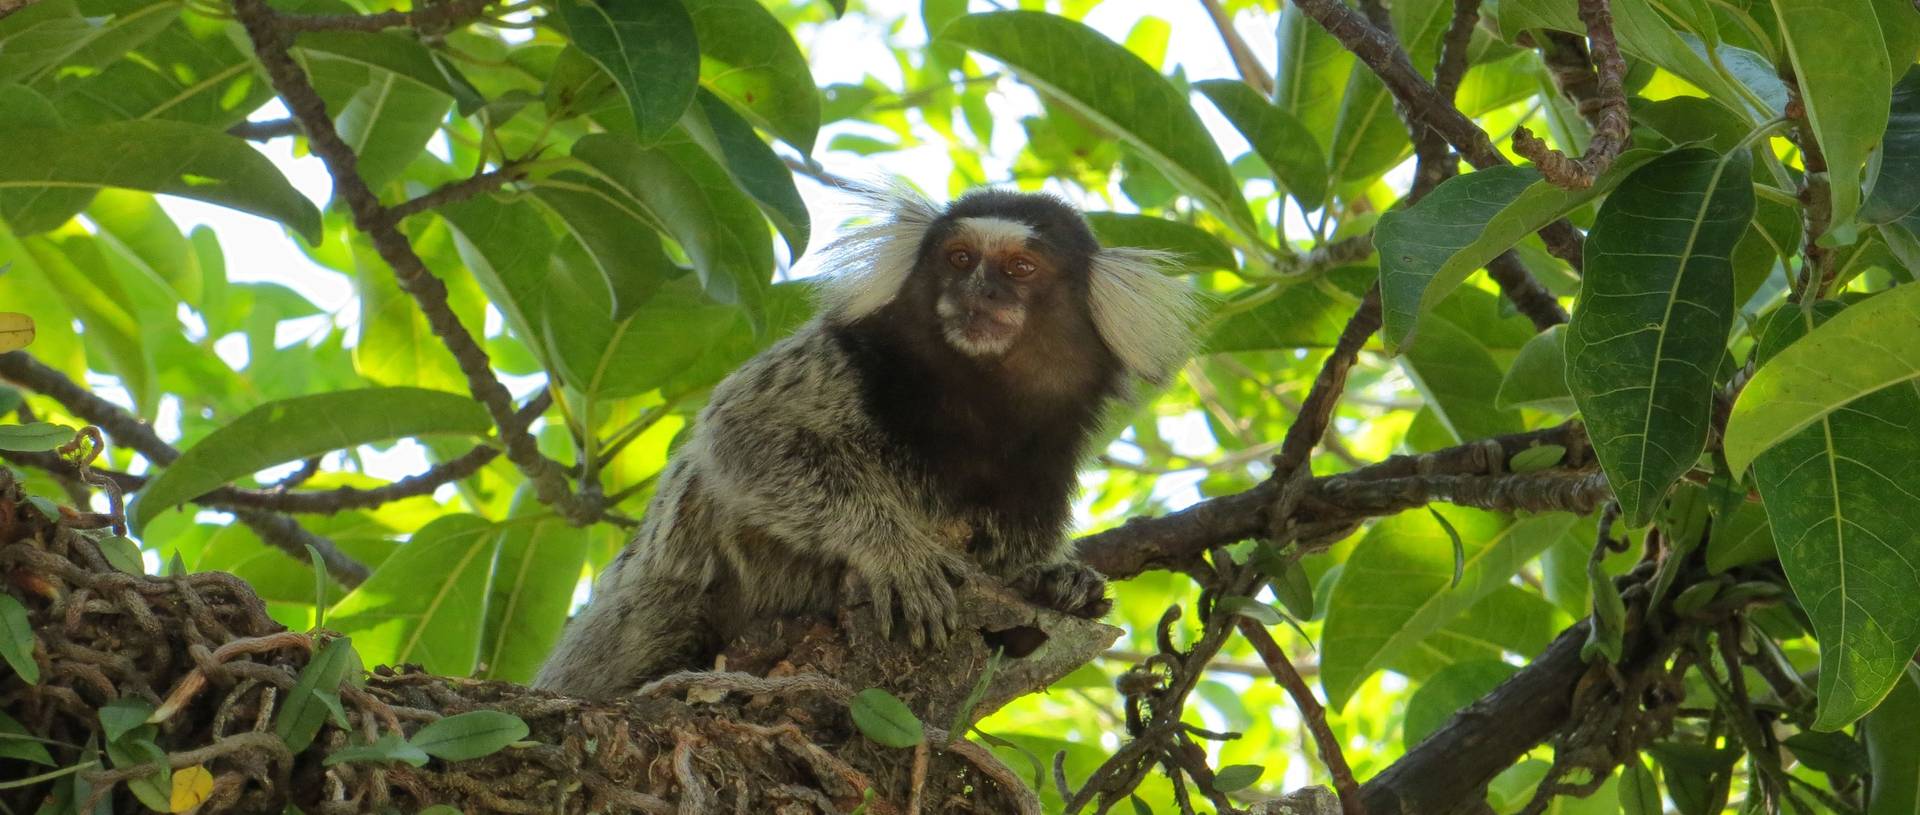 Sugarloaf, Marmoset Monkey   Rio